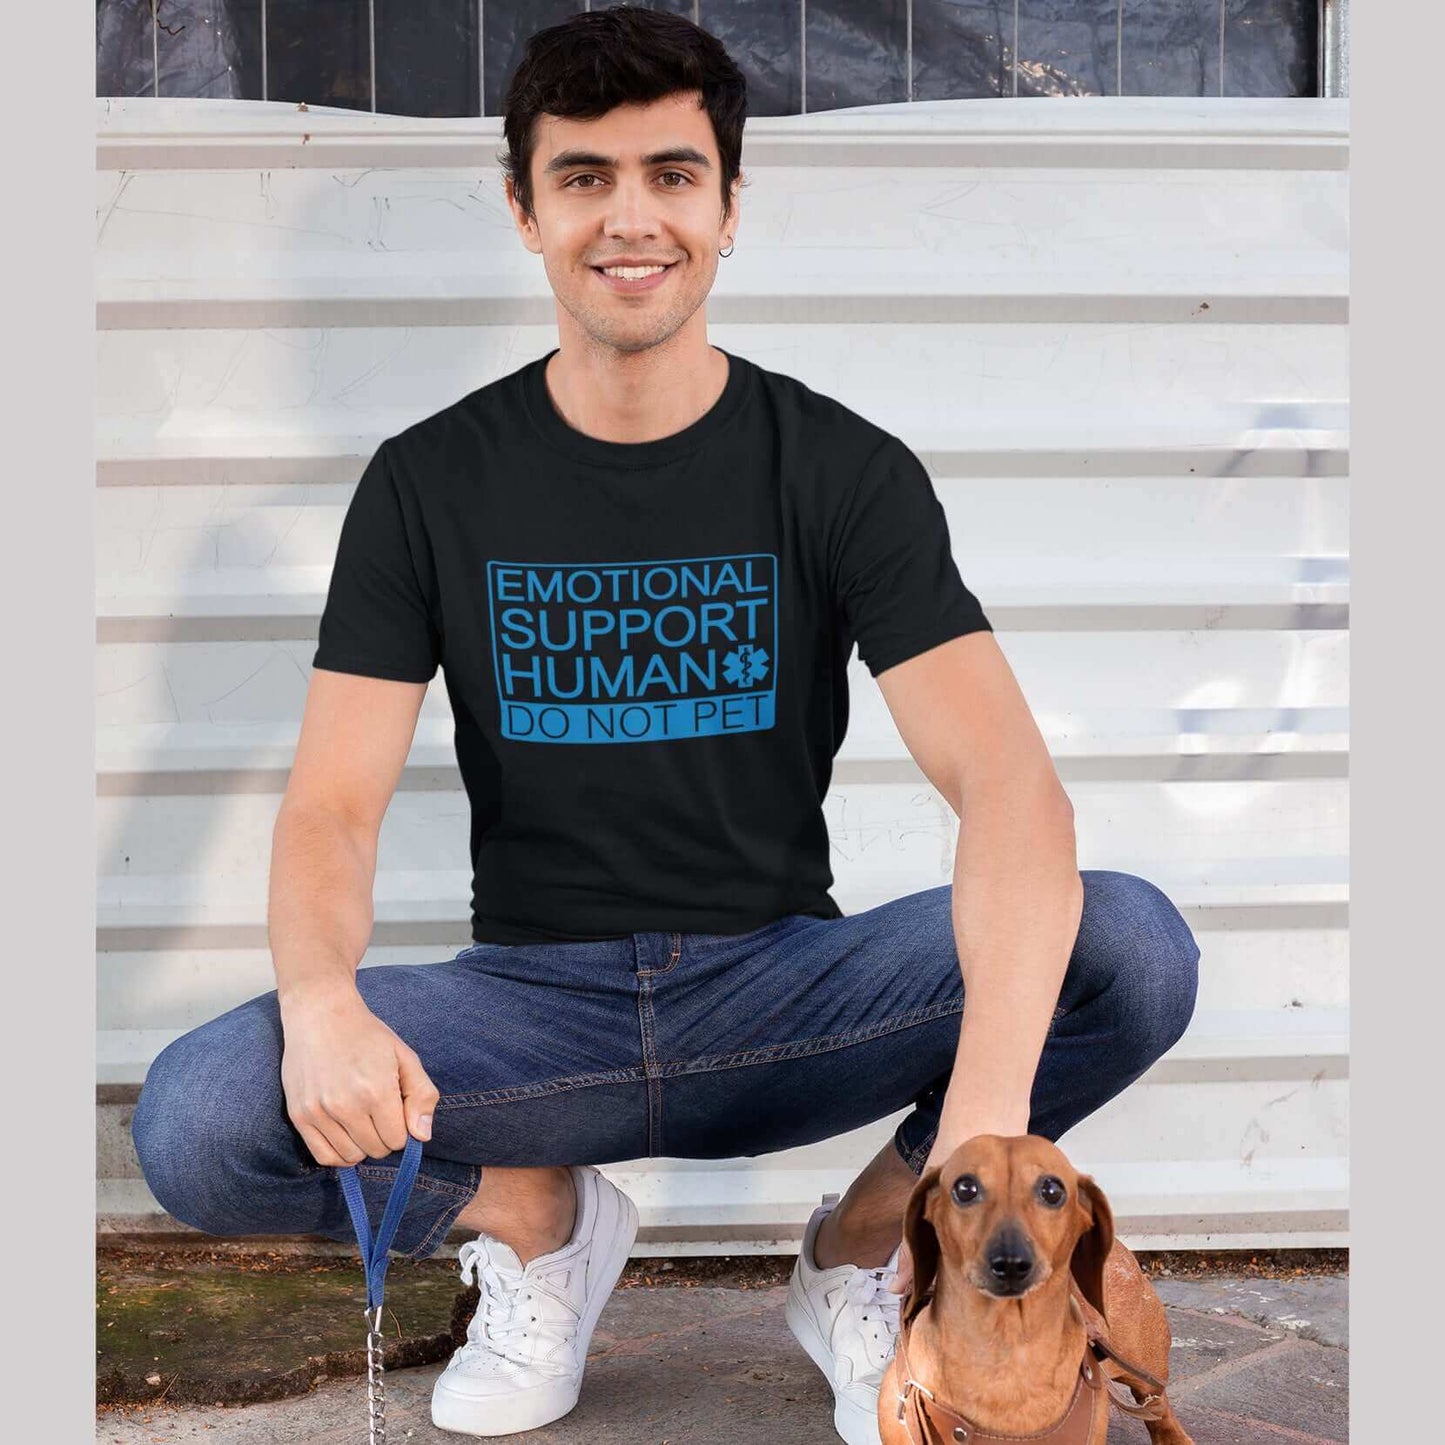 Emotional support human do not pet t-shirt